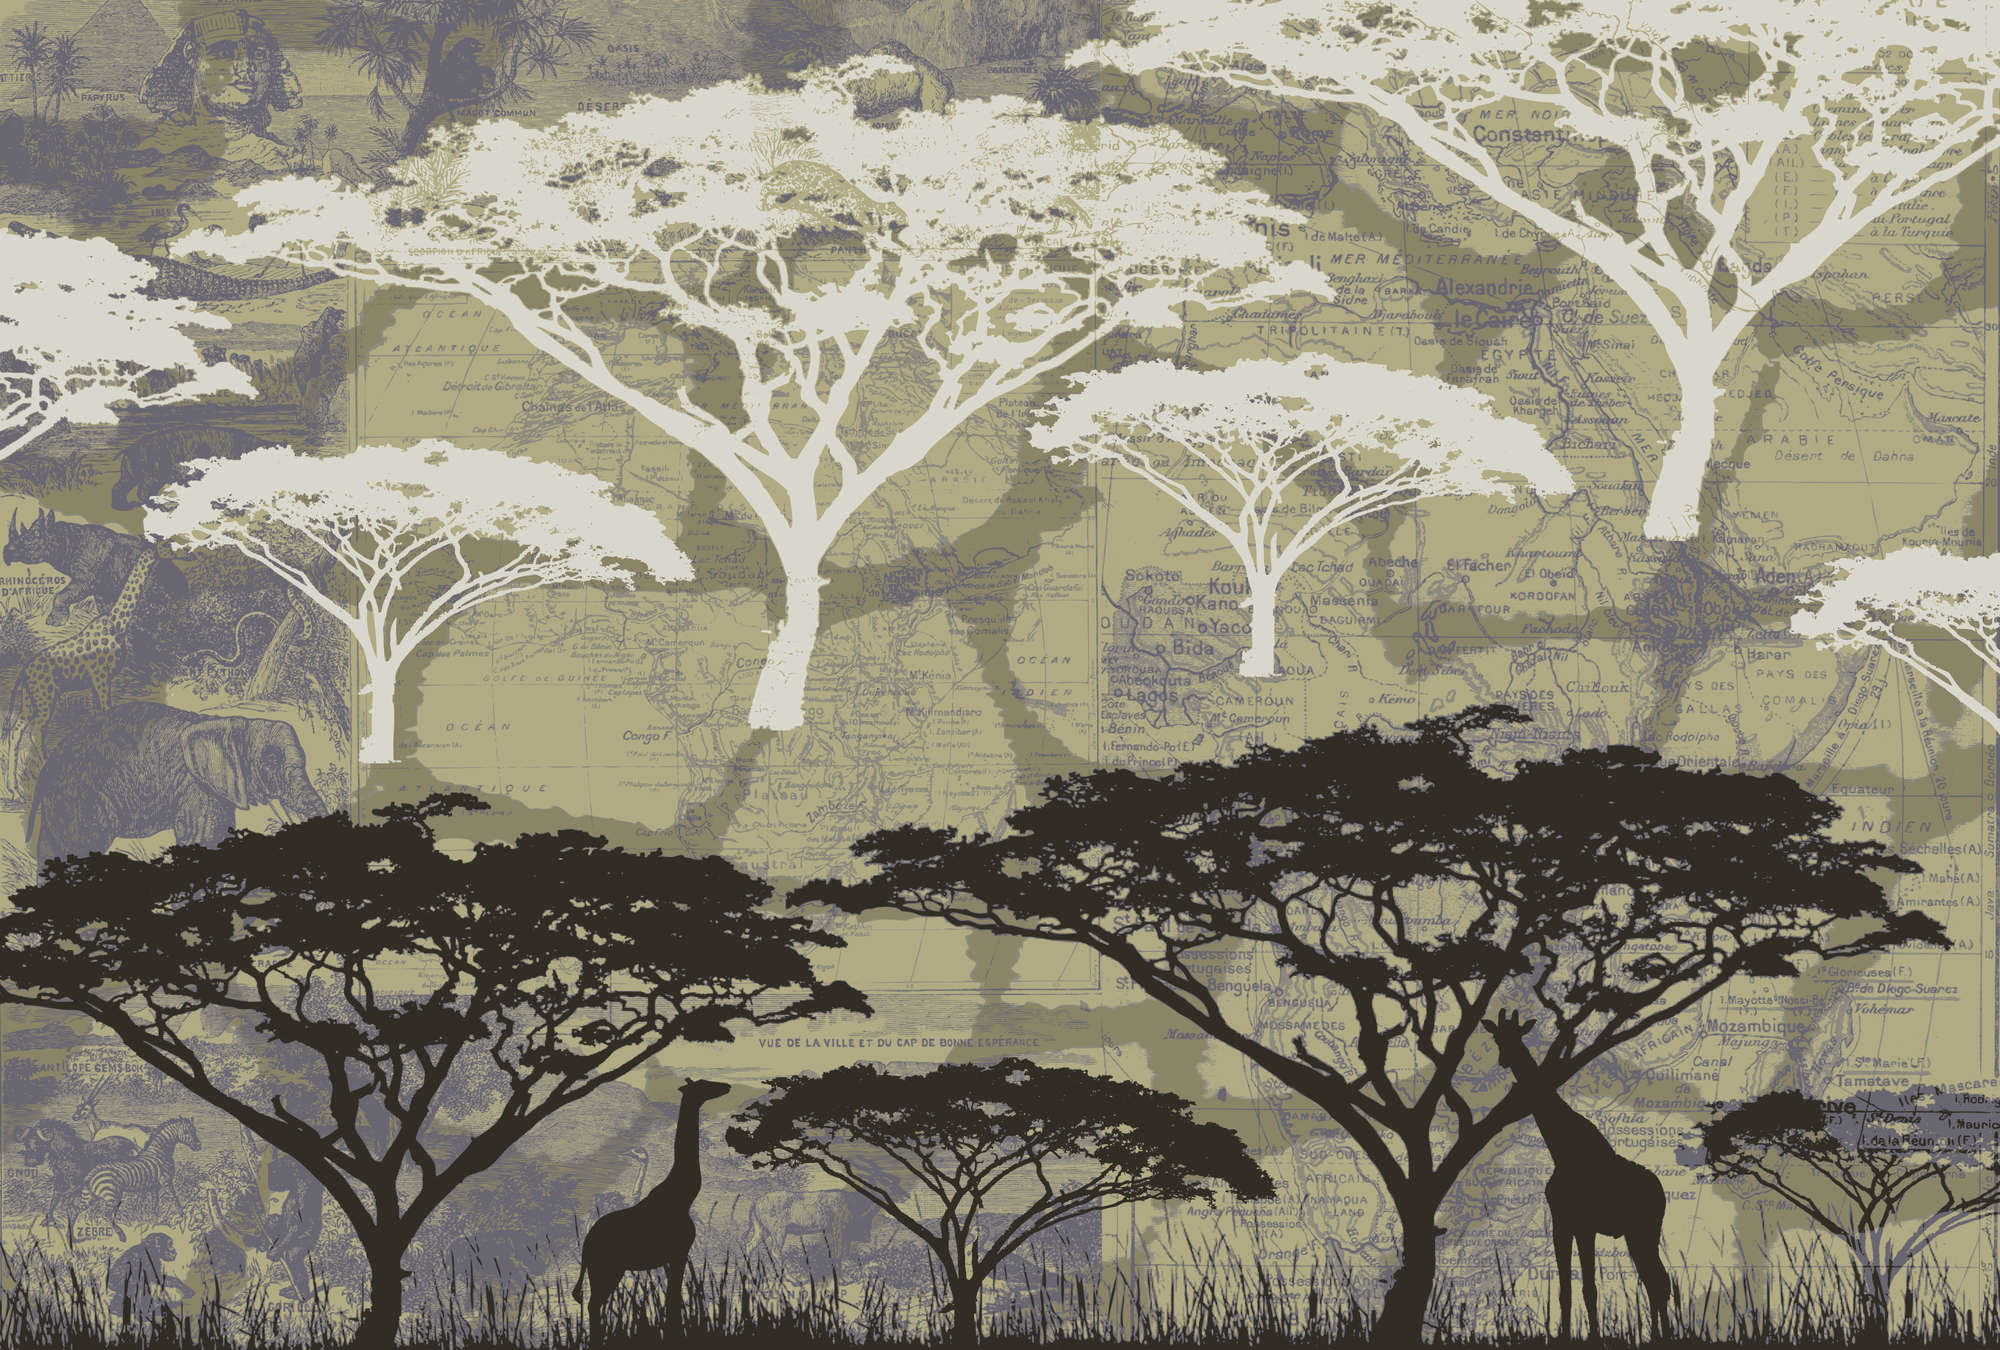             Savannah - Mural de pared con motivos de árboles en estilo africano
        